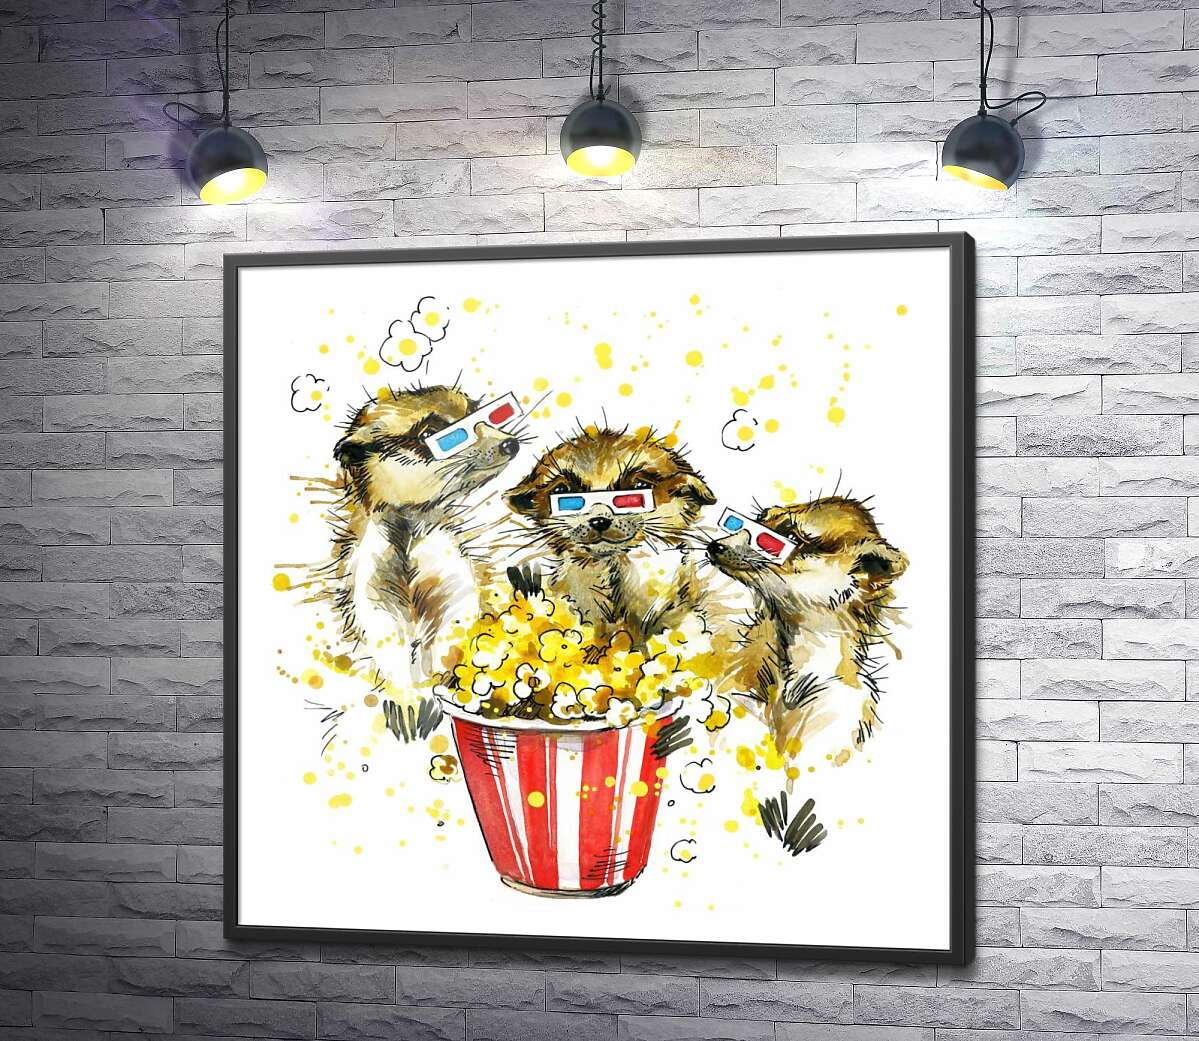 постер Шумные суслики смотрят кино с попкорном